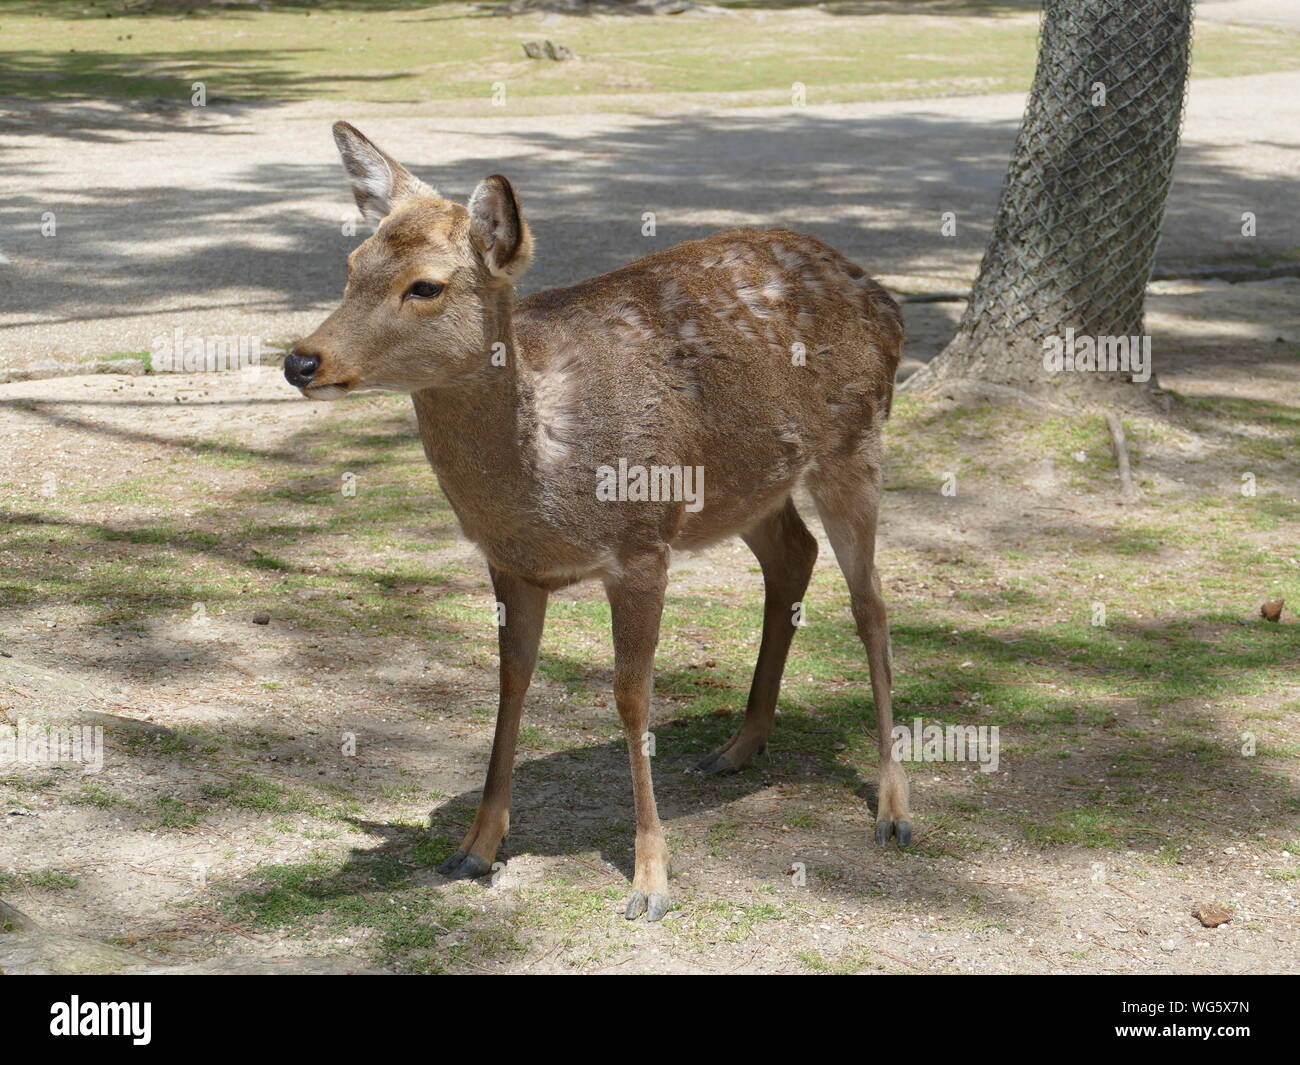 Deer in Nara Park, Nara, Japan Stock Photo